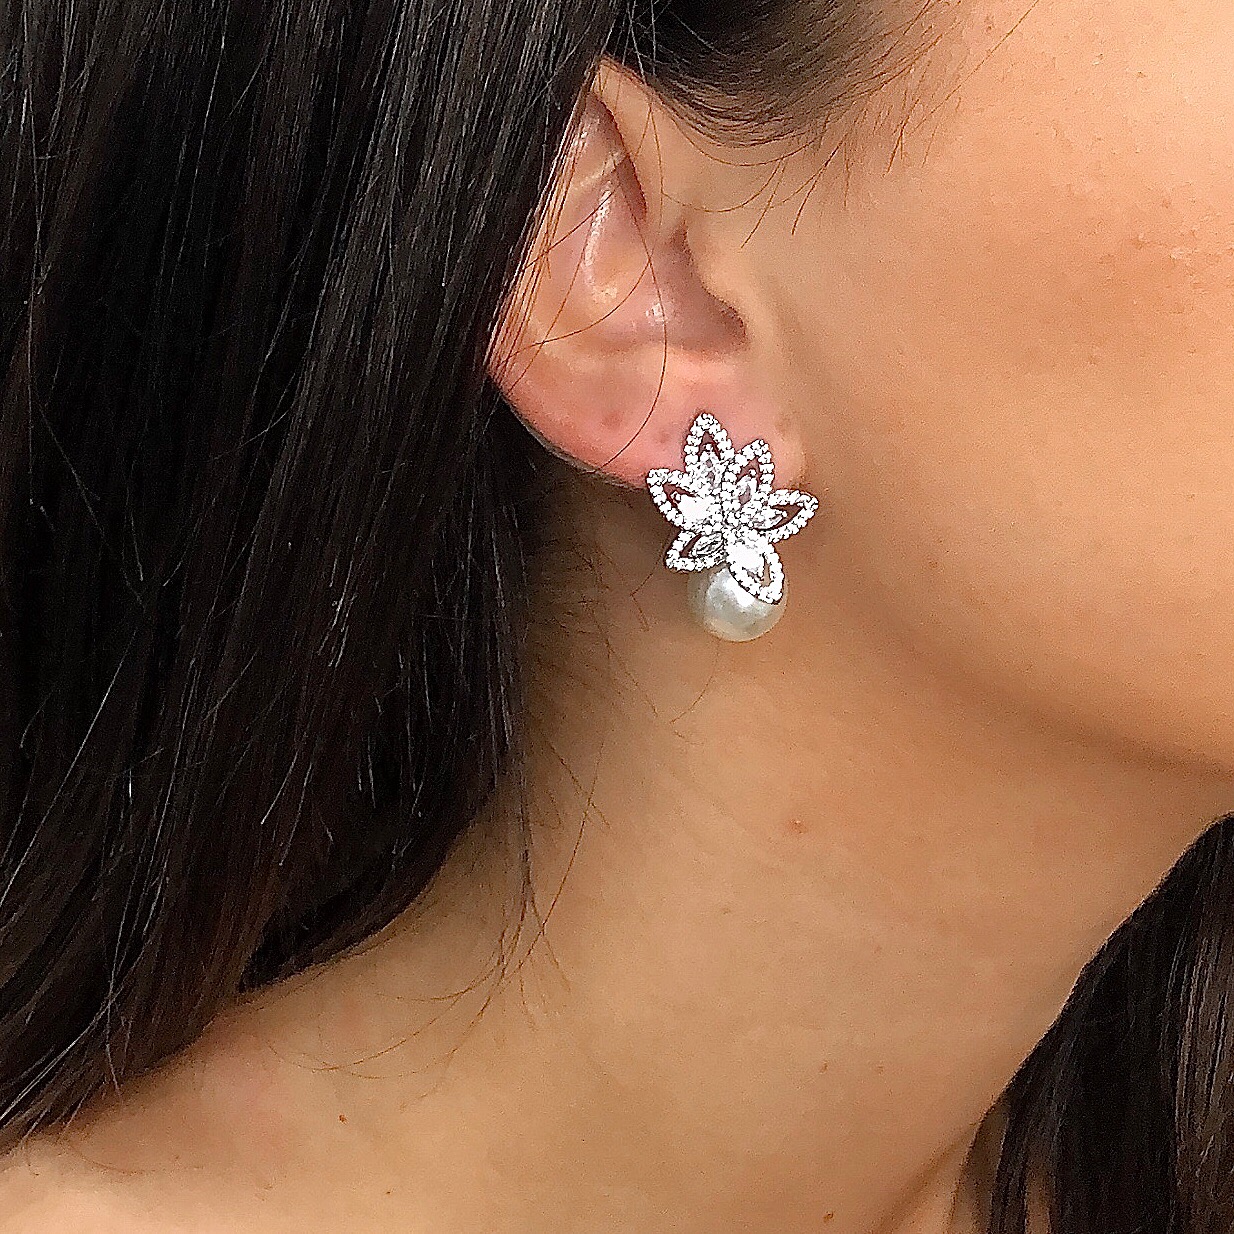 Pearl diamond earrings|Hayden|Jeanette Maree|Shop Online Now